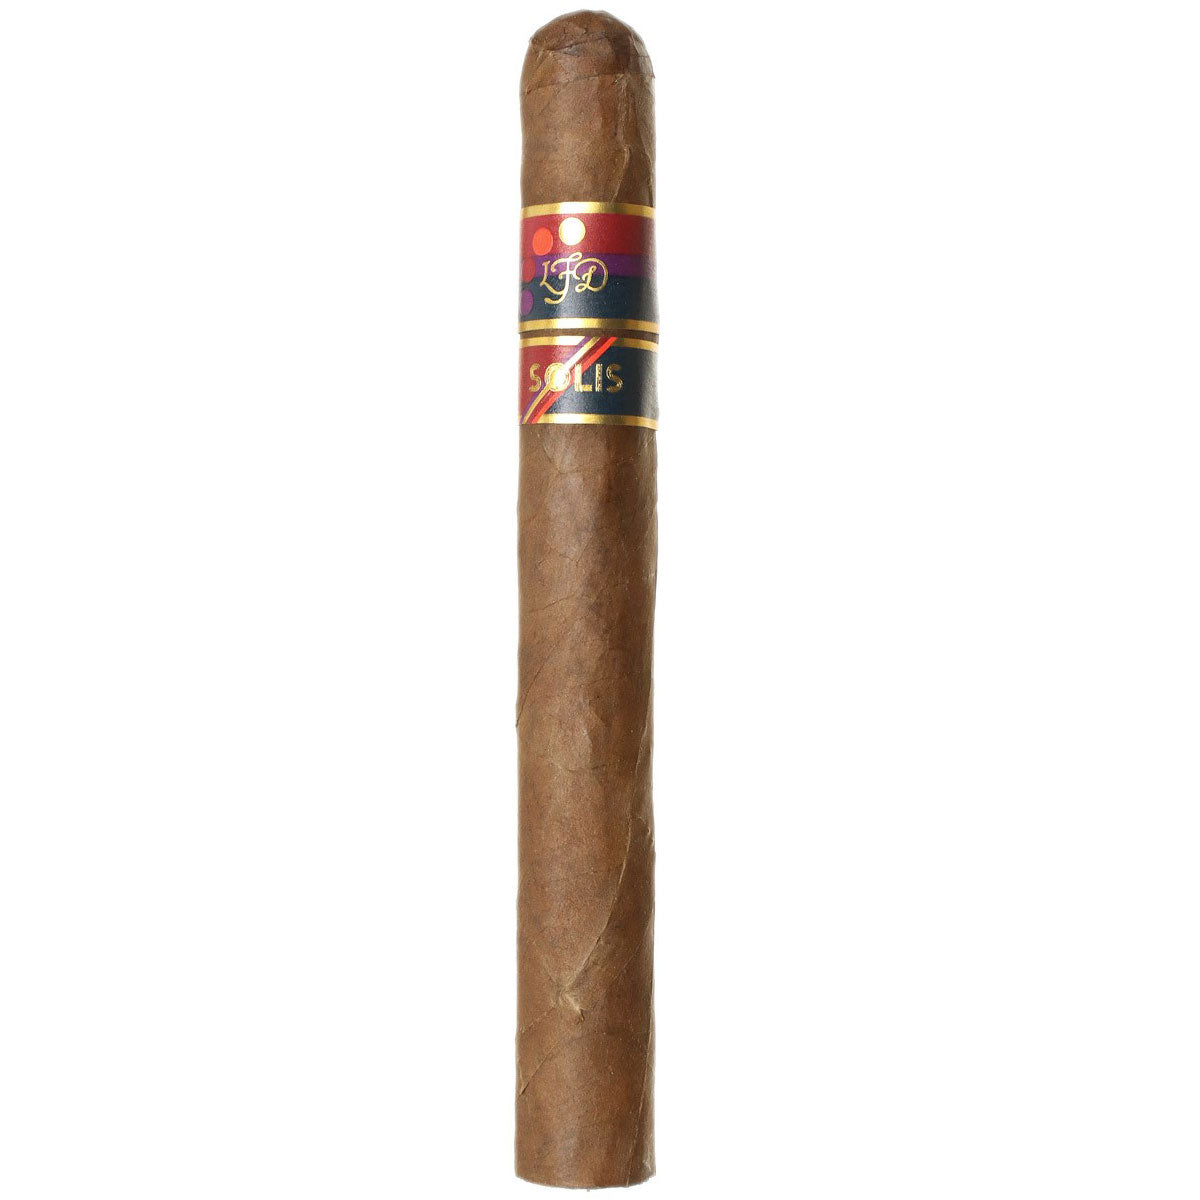 La Flor Dominicana Solis Churchill Cigars